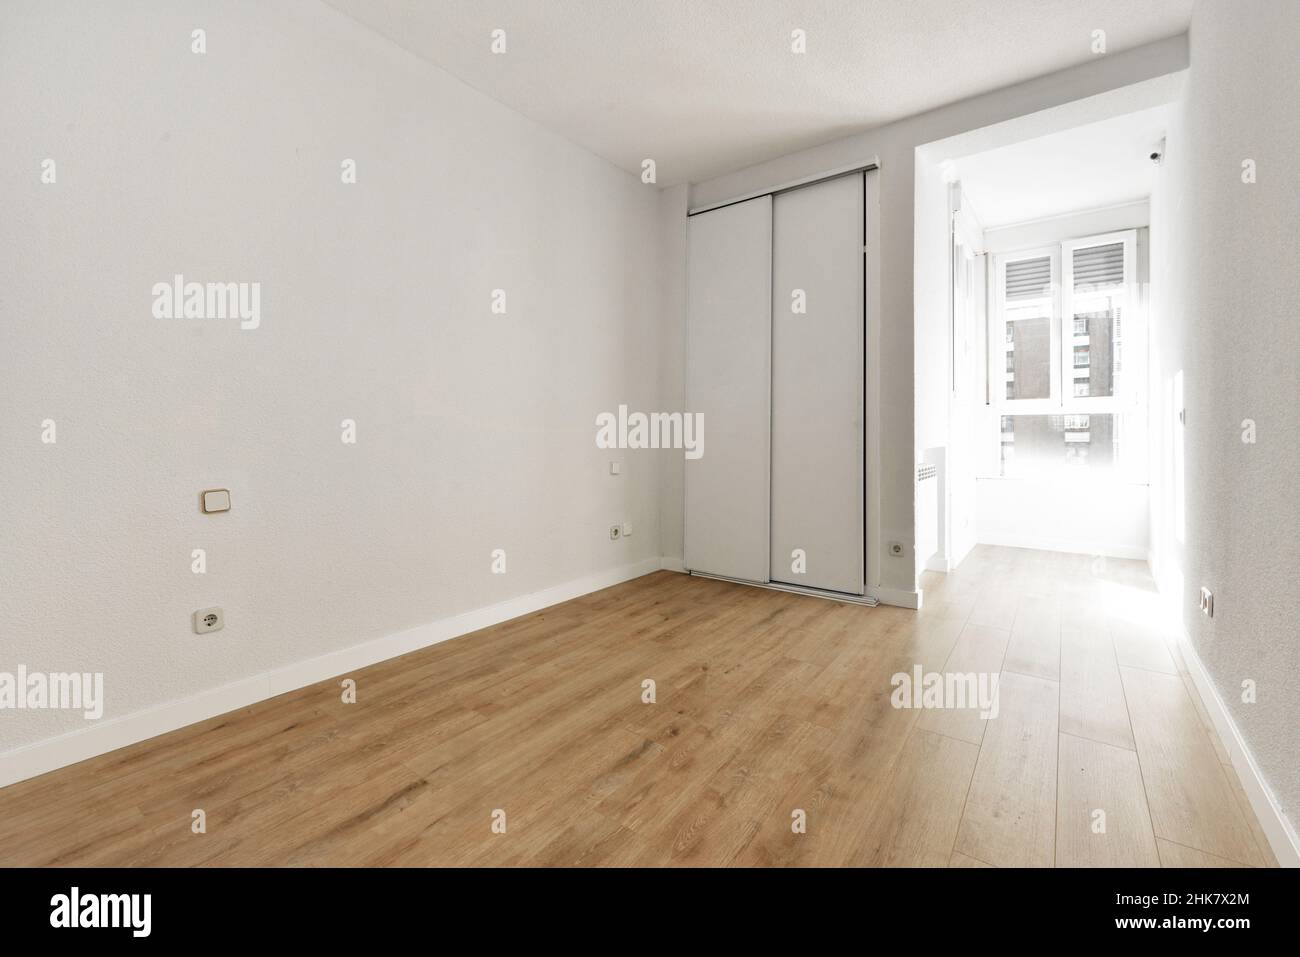 Camera vuota con armadio a muro con porte scorrevoli e finestra bianca attraverso la quale entra molta luce Foto Stock